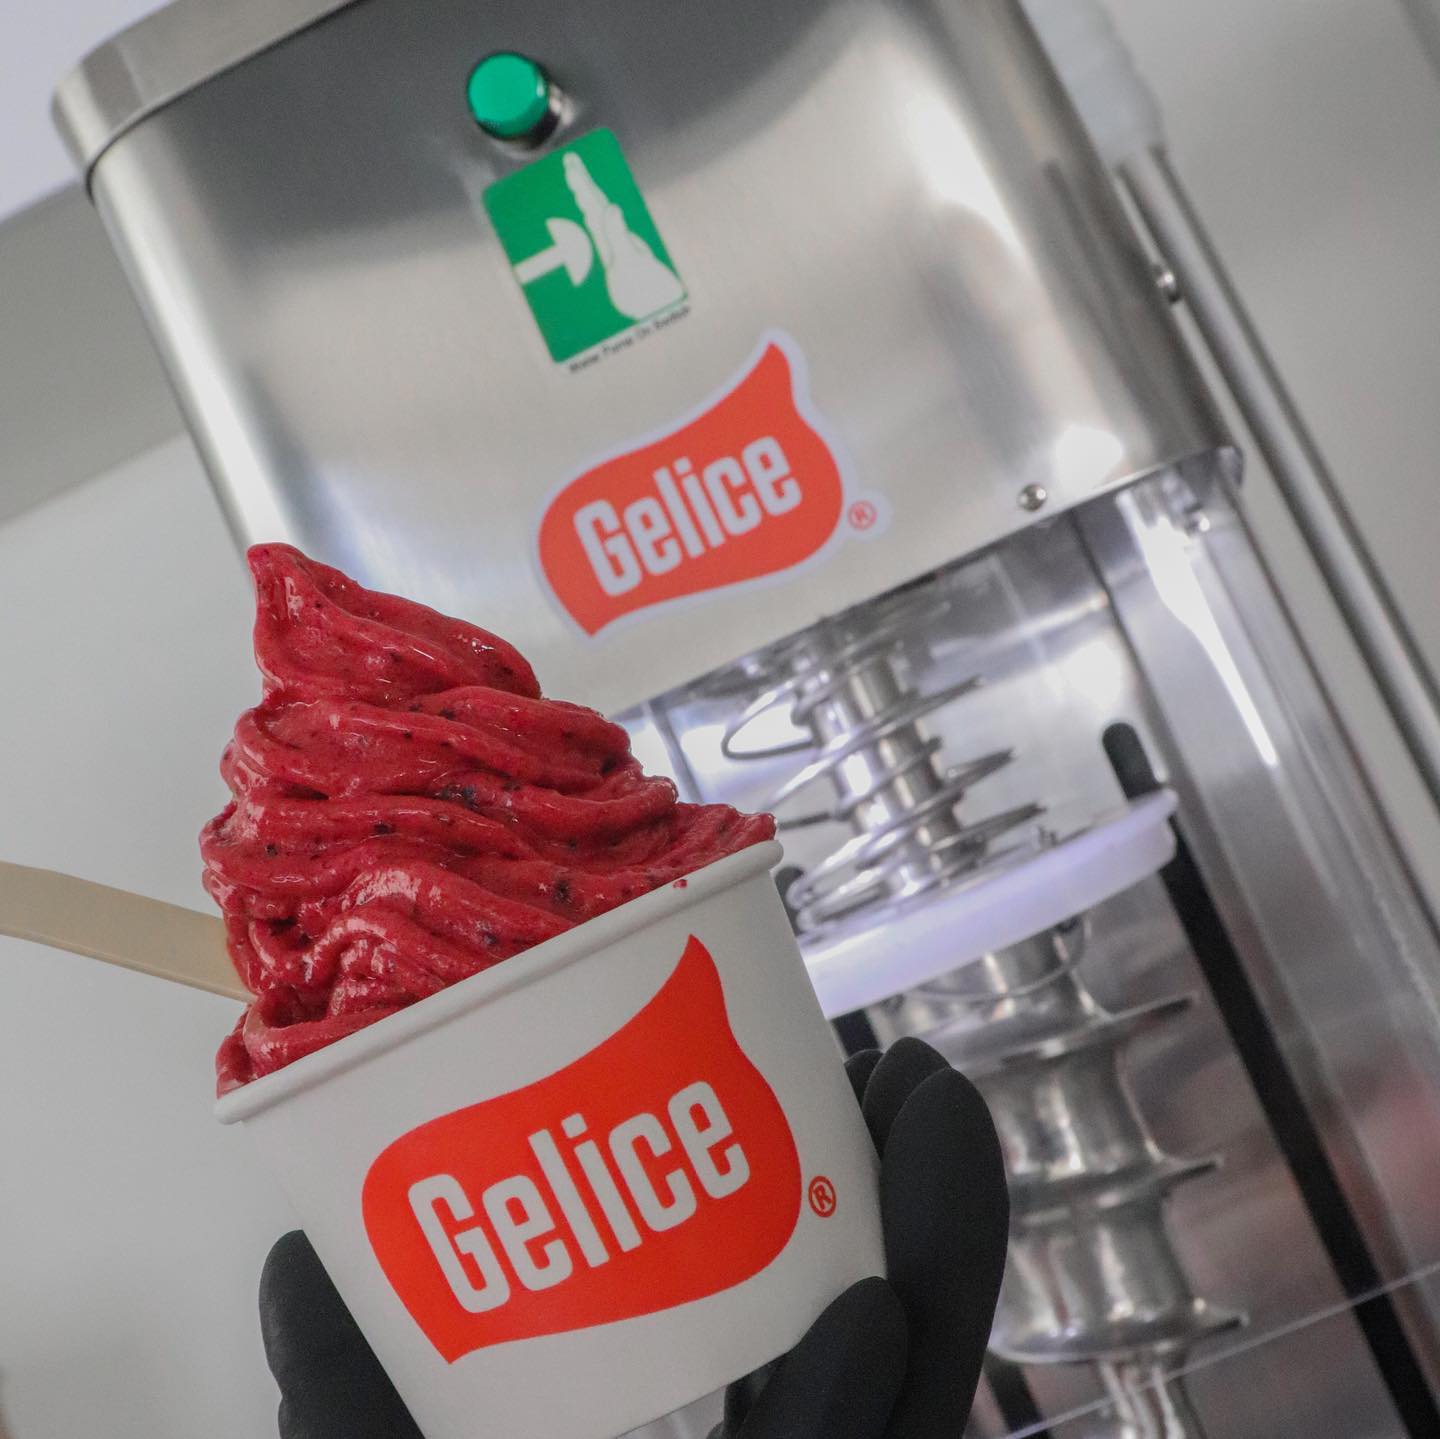 Maquina de Helado Gelice en Mexico. Venta de maquinas de helados